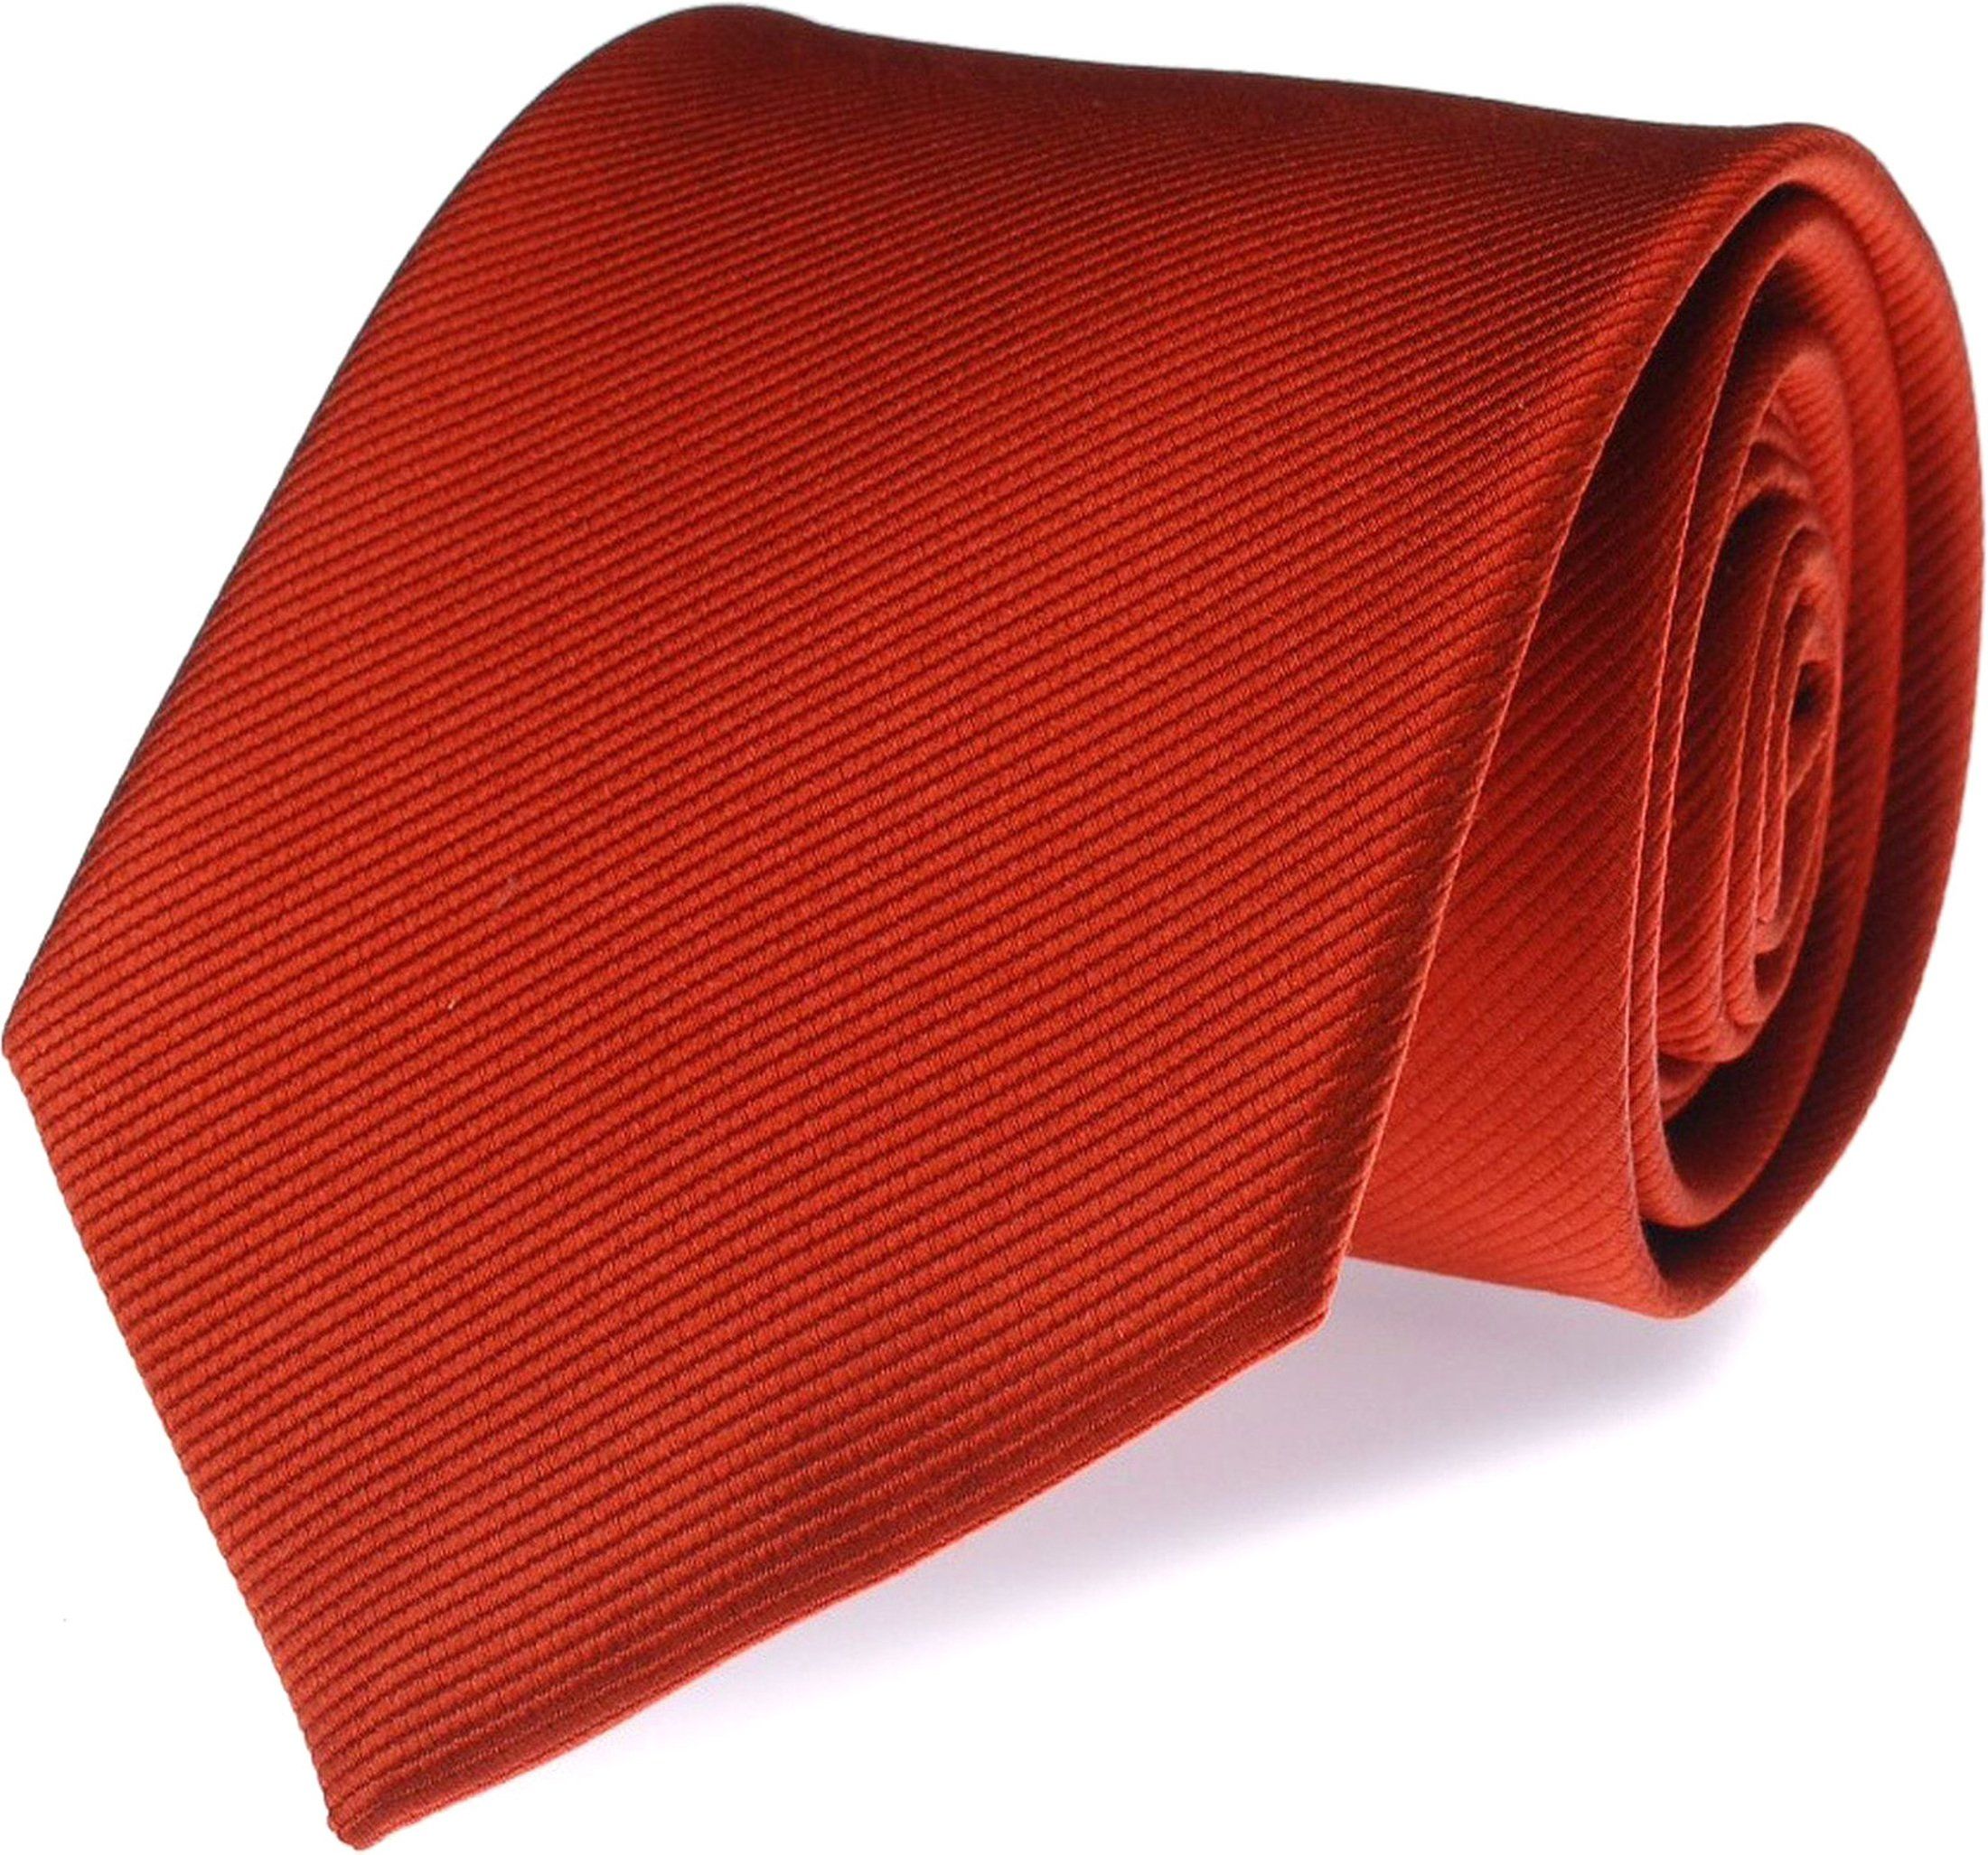 Cravate Soie Uni F34 Rouge